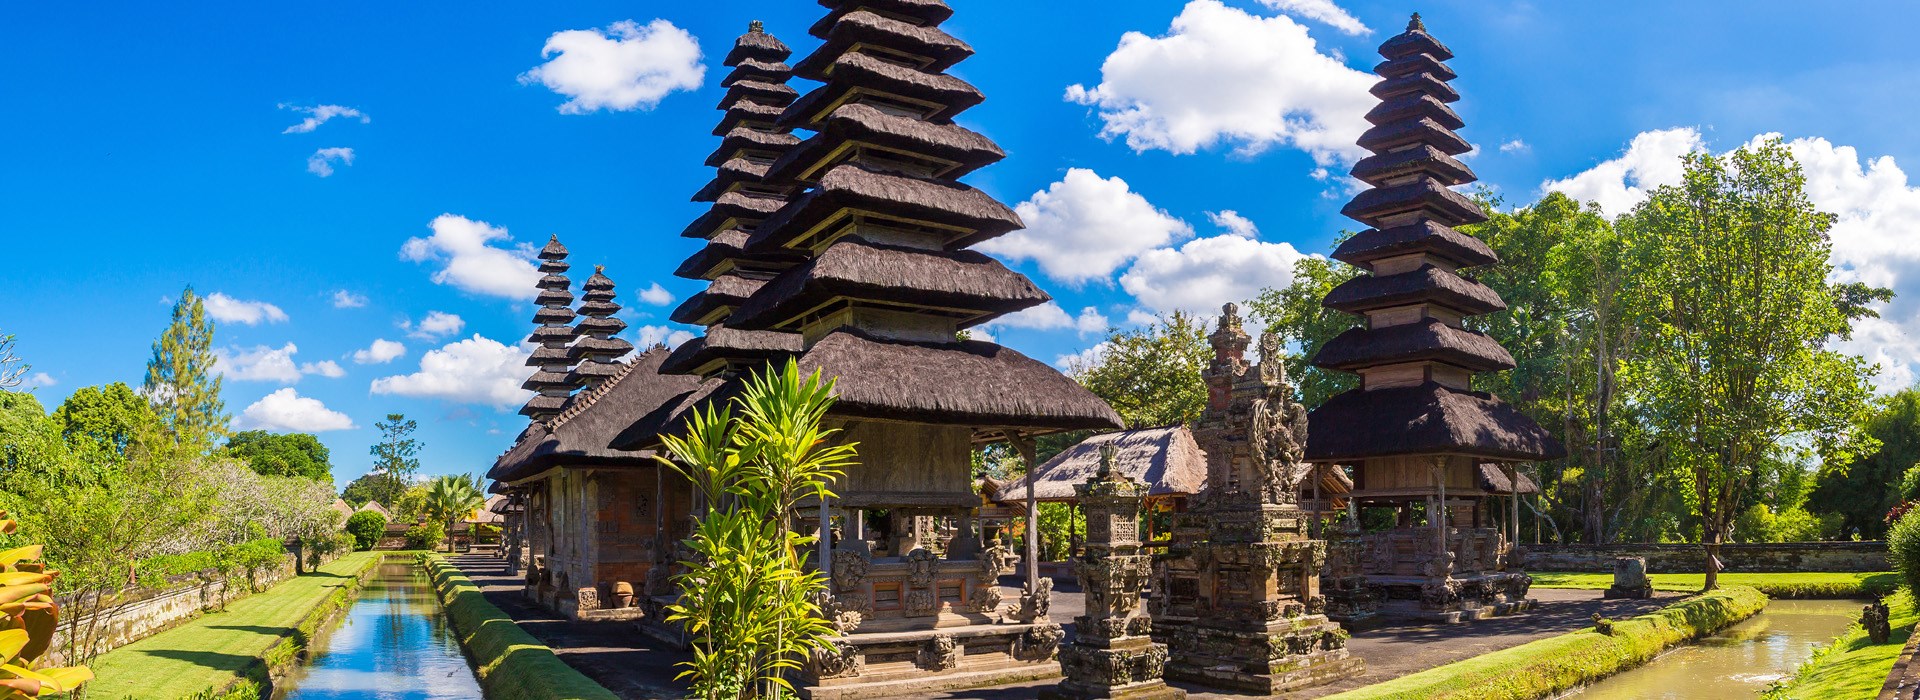 Visiter Le Temple Taman Ayun - Indonesie